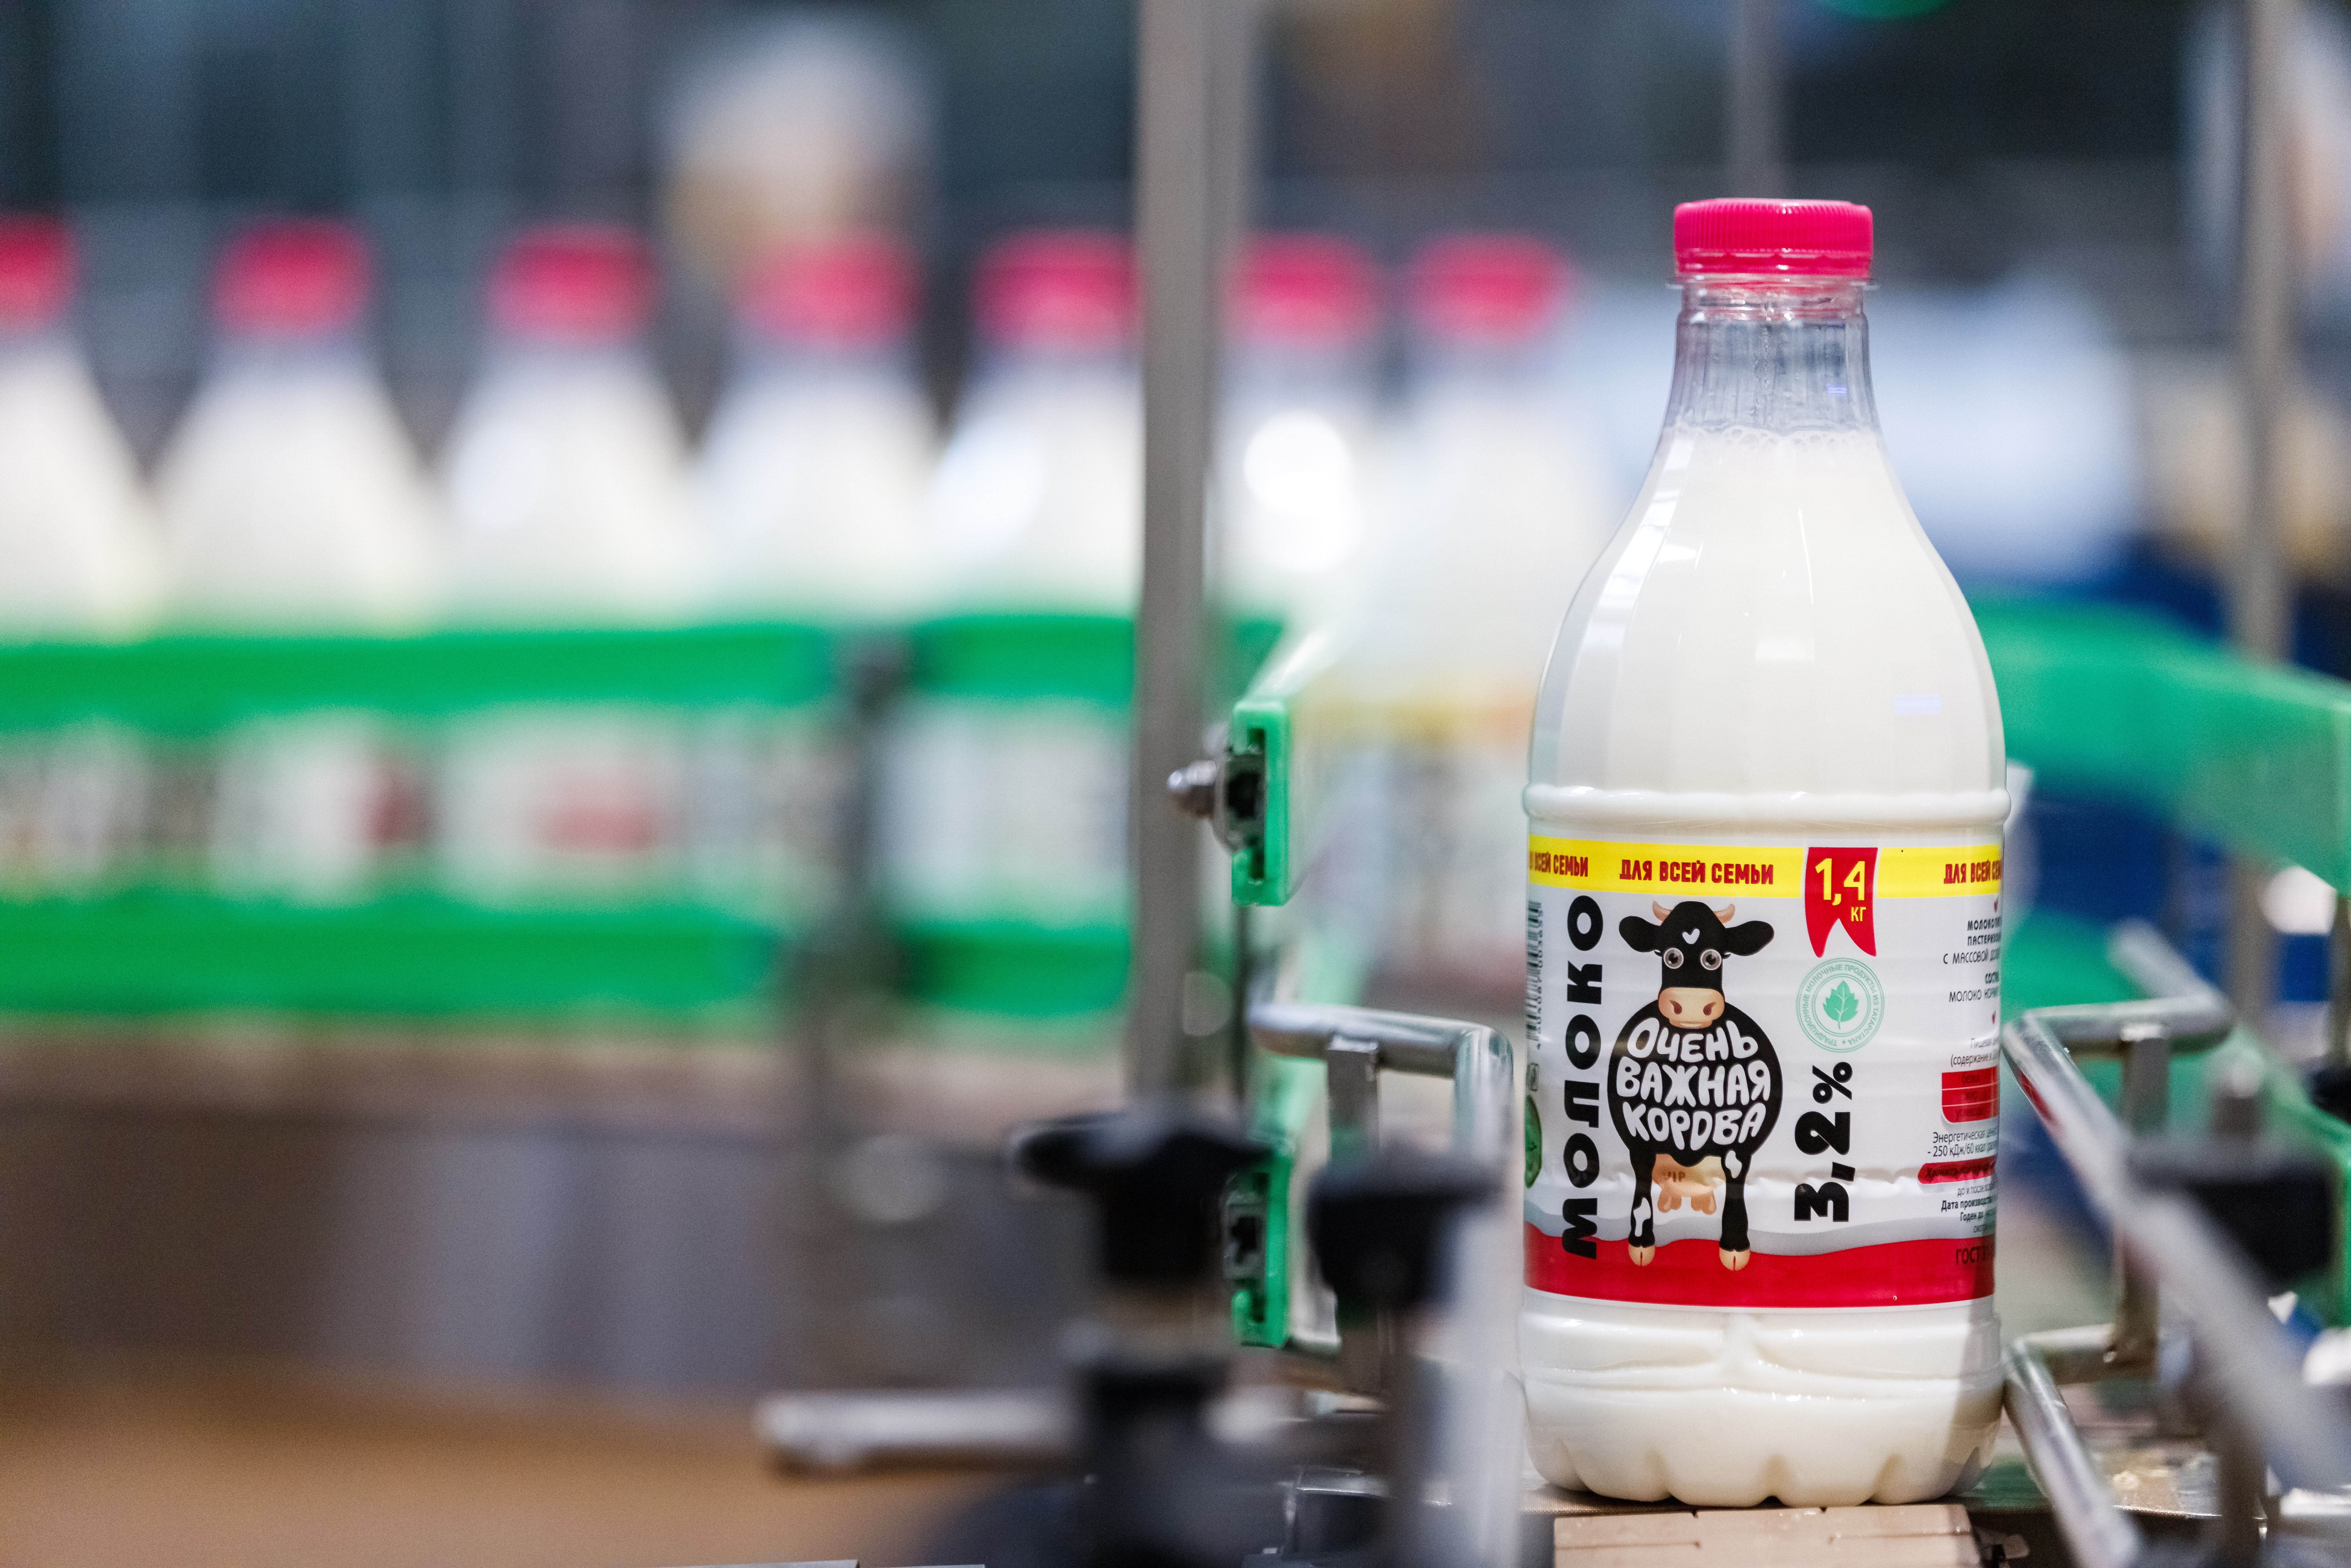 ЗМК занял 18 место в ТОП-30 крупнейших молочных компаний России